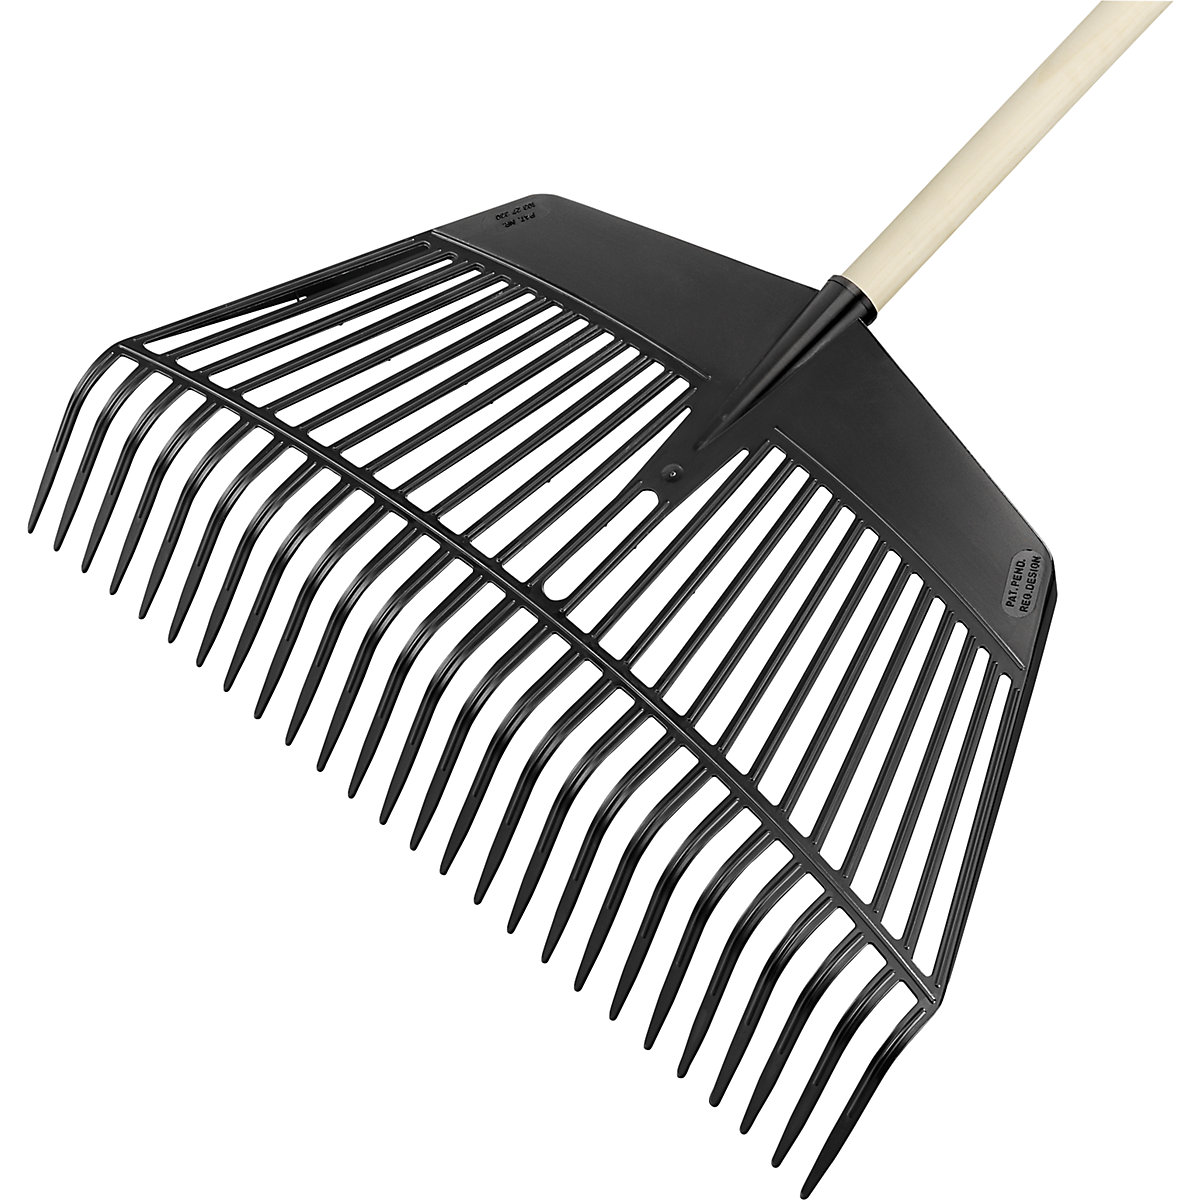 Combination leaf rake and shovel - FLORA